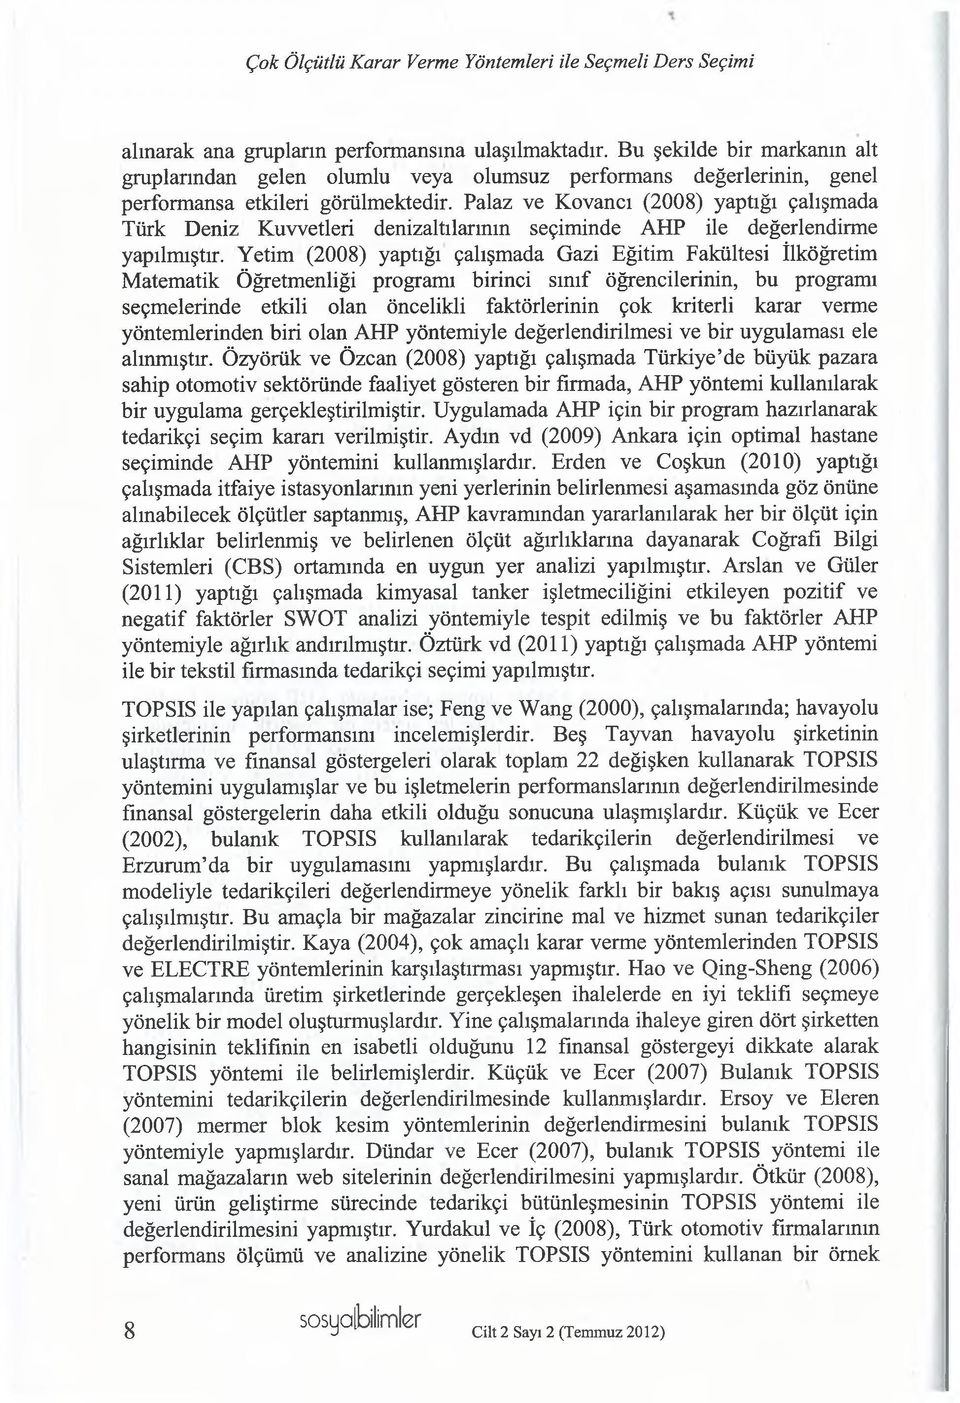 Palaz ve Kovancı (2008) yaptığı çalışmada Türk Deniz Kuvvetleri denizaltılarmın seçiminde AHP ile değerlendirme yapılmıştır.